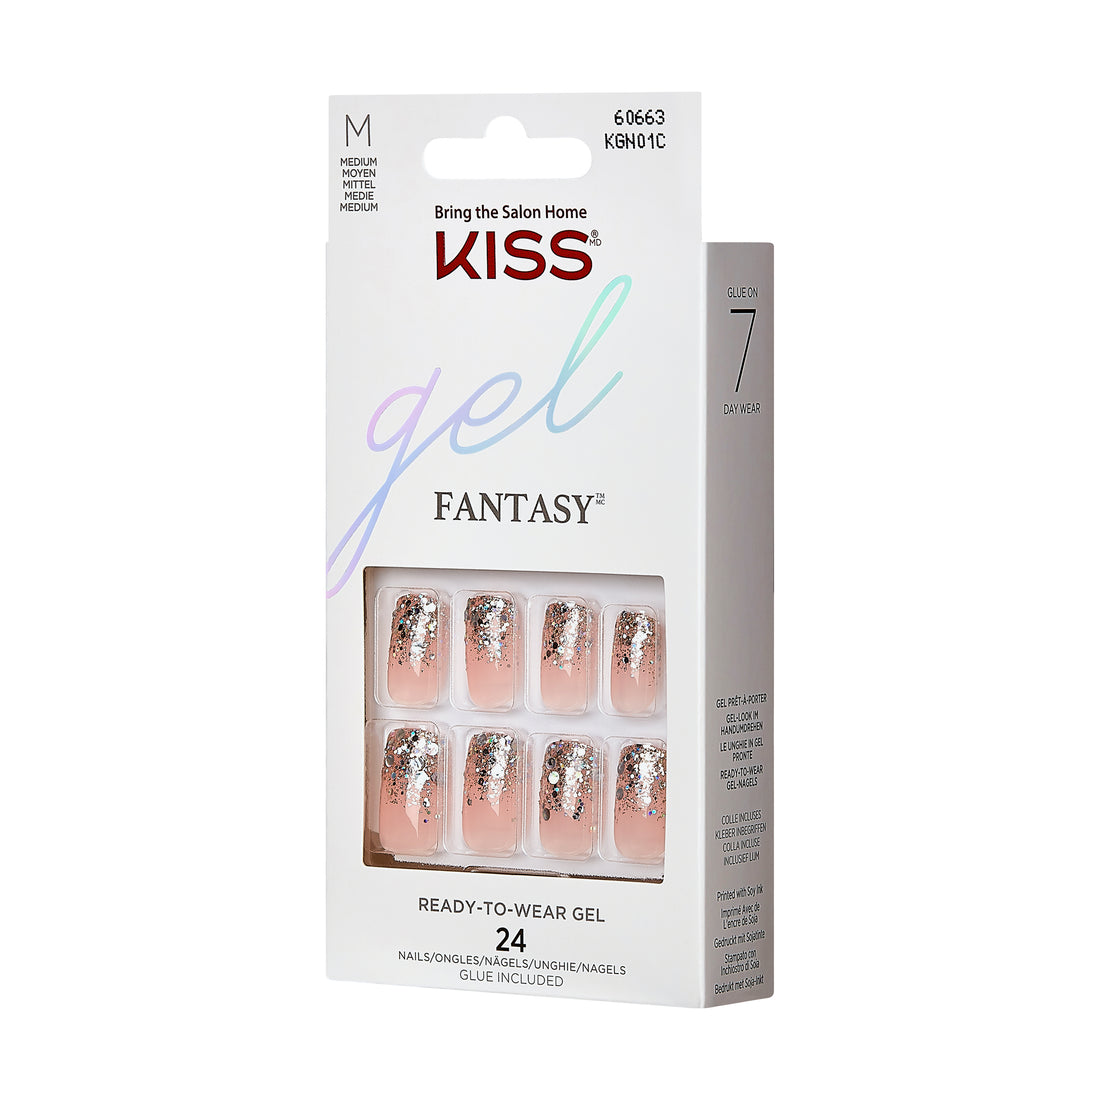 KISS Gel Fantasy - Fanciful